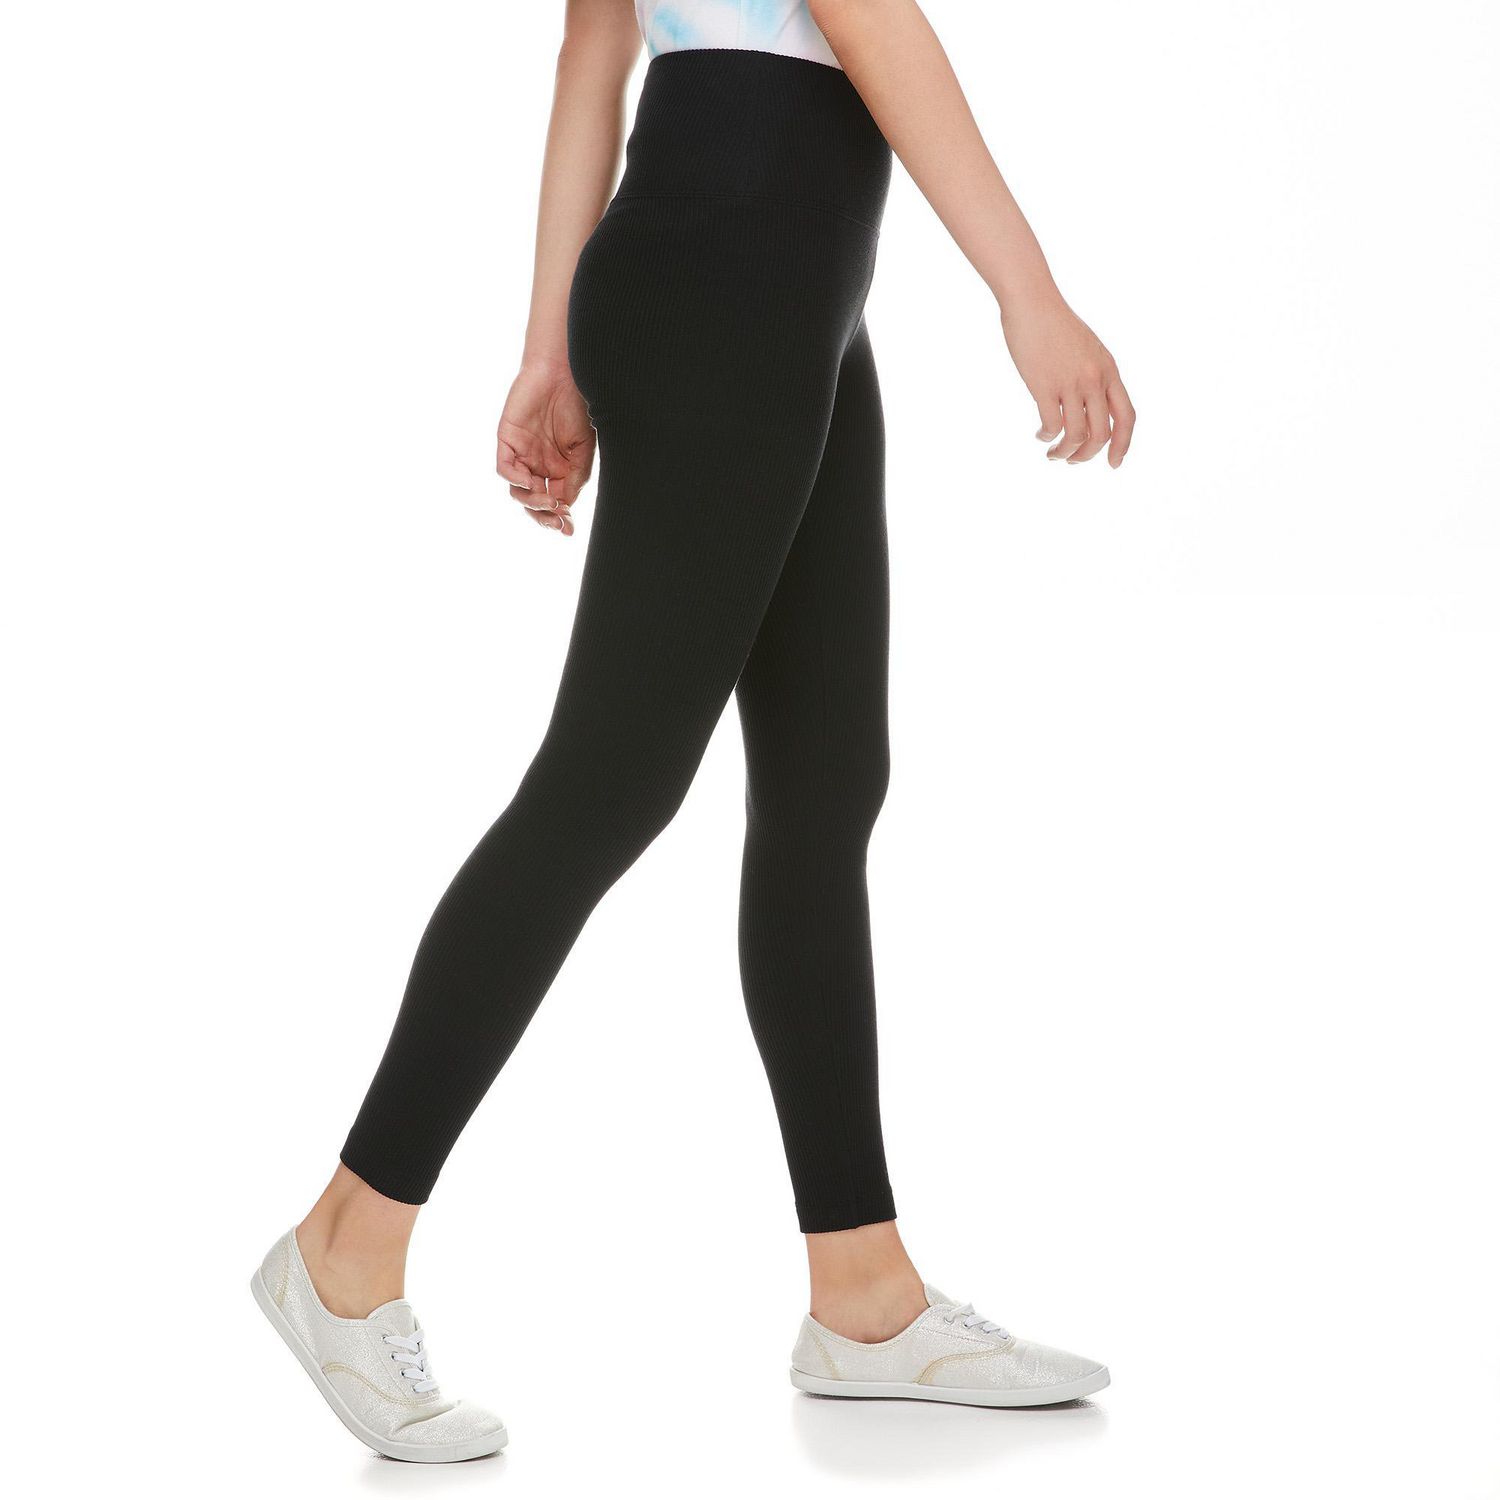 Slim Fit Plain Ladies Black Cotton Legging, Size: Medium at Rs 110